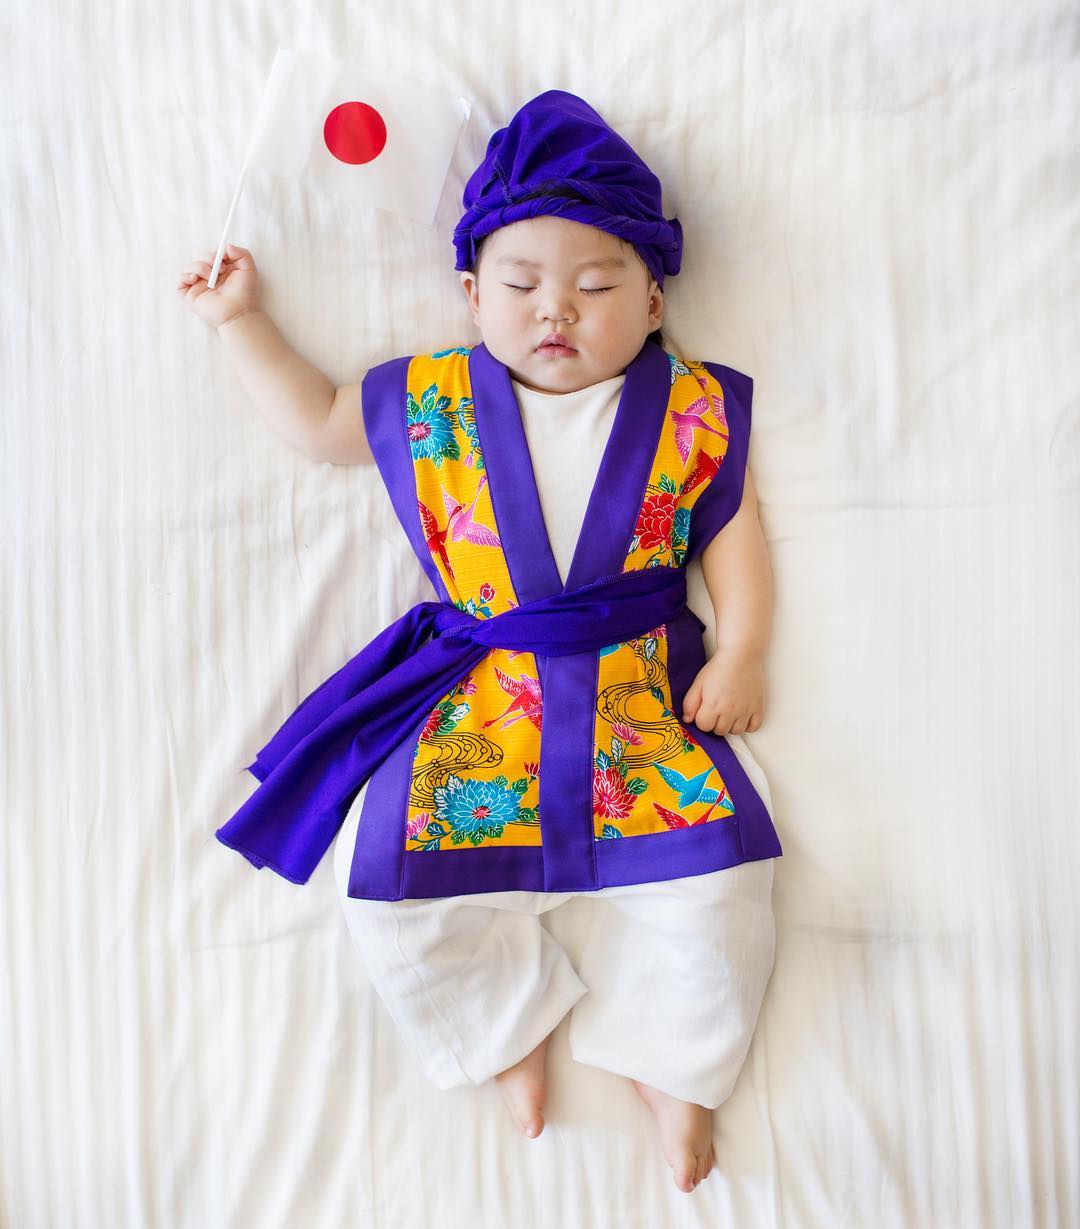 Майка снима спящата си дъщеря с народни носии - Япония